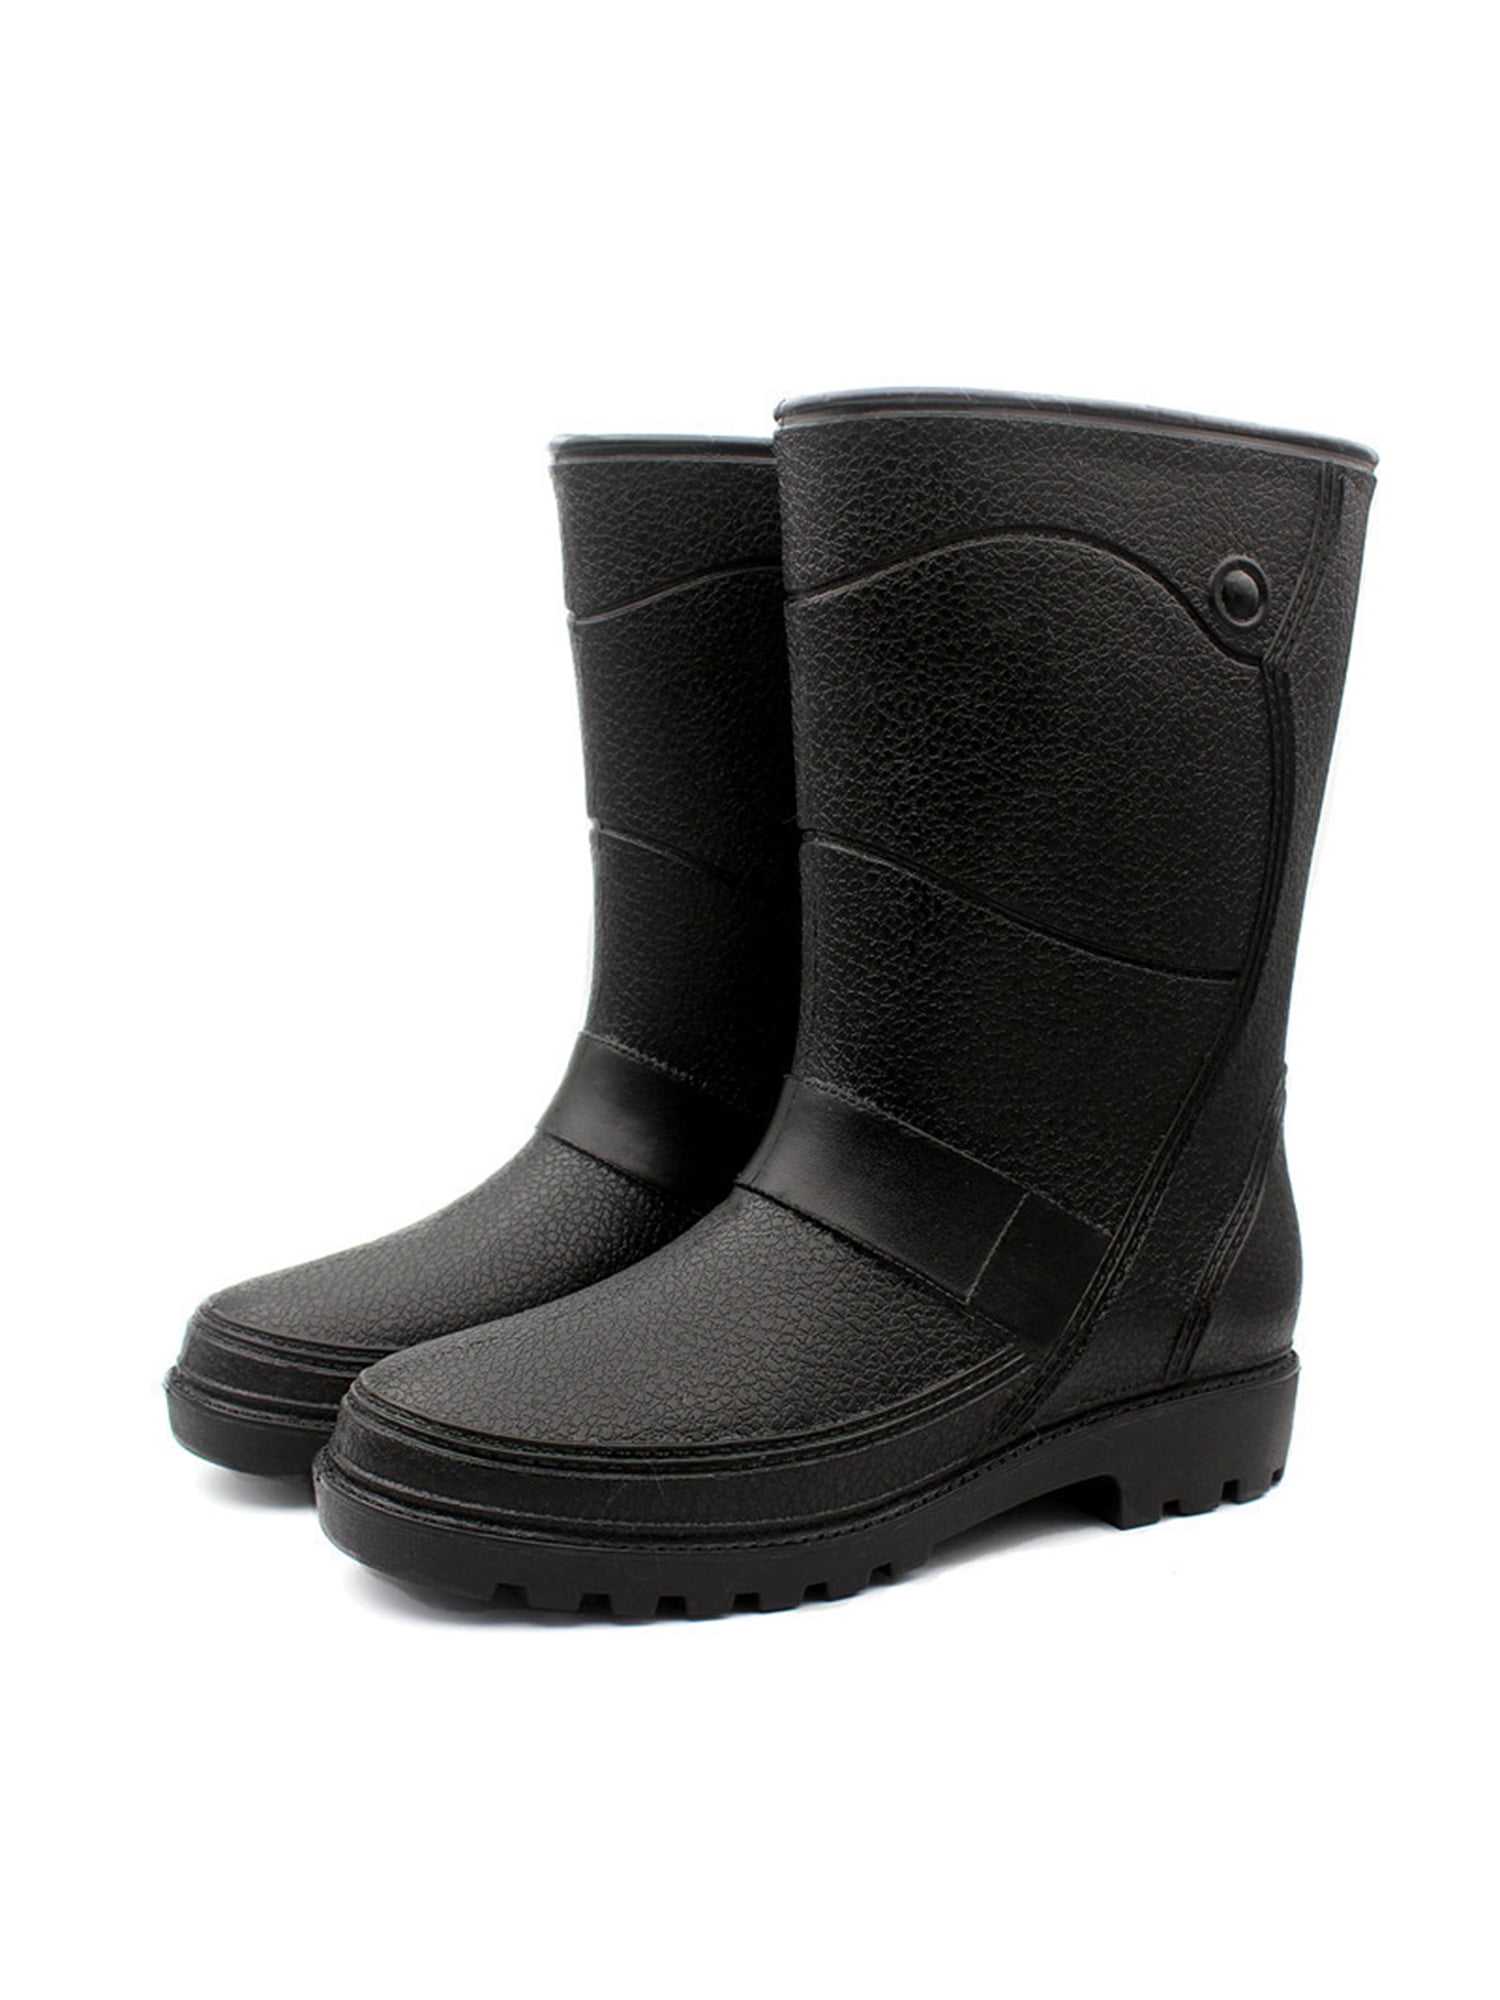 Kesitin Mens Garden Shoes Non-slip Rubber Boot Wide Calf Rain Boots ...